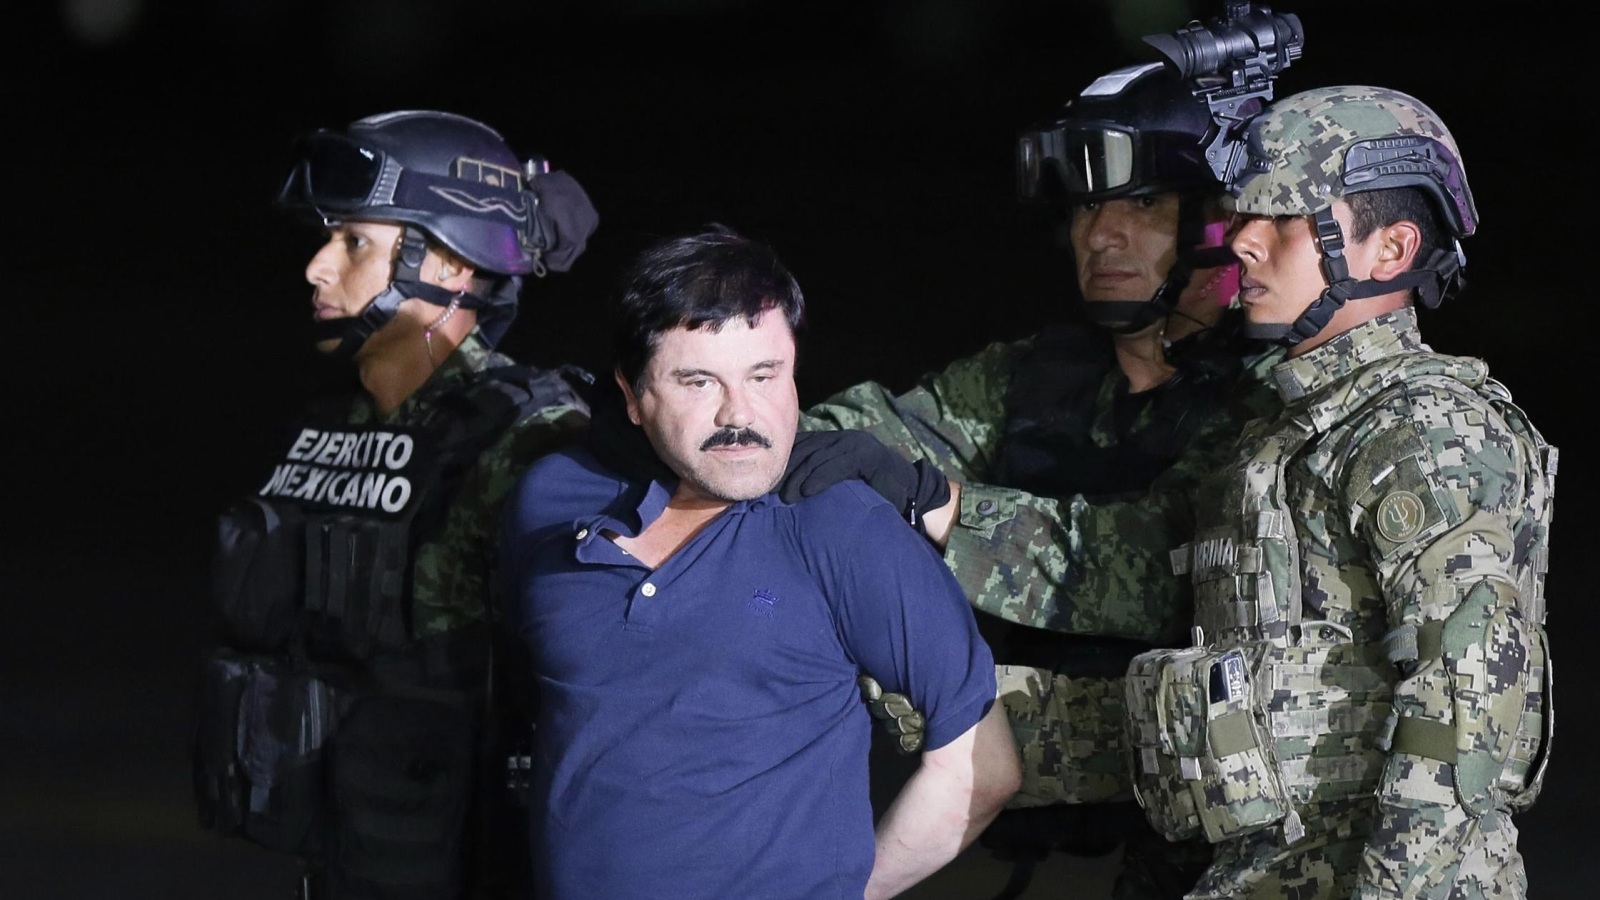 المكسيك تعتزم تسليم إمبراطور المخدرات لأمريكا